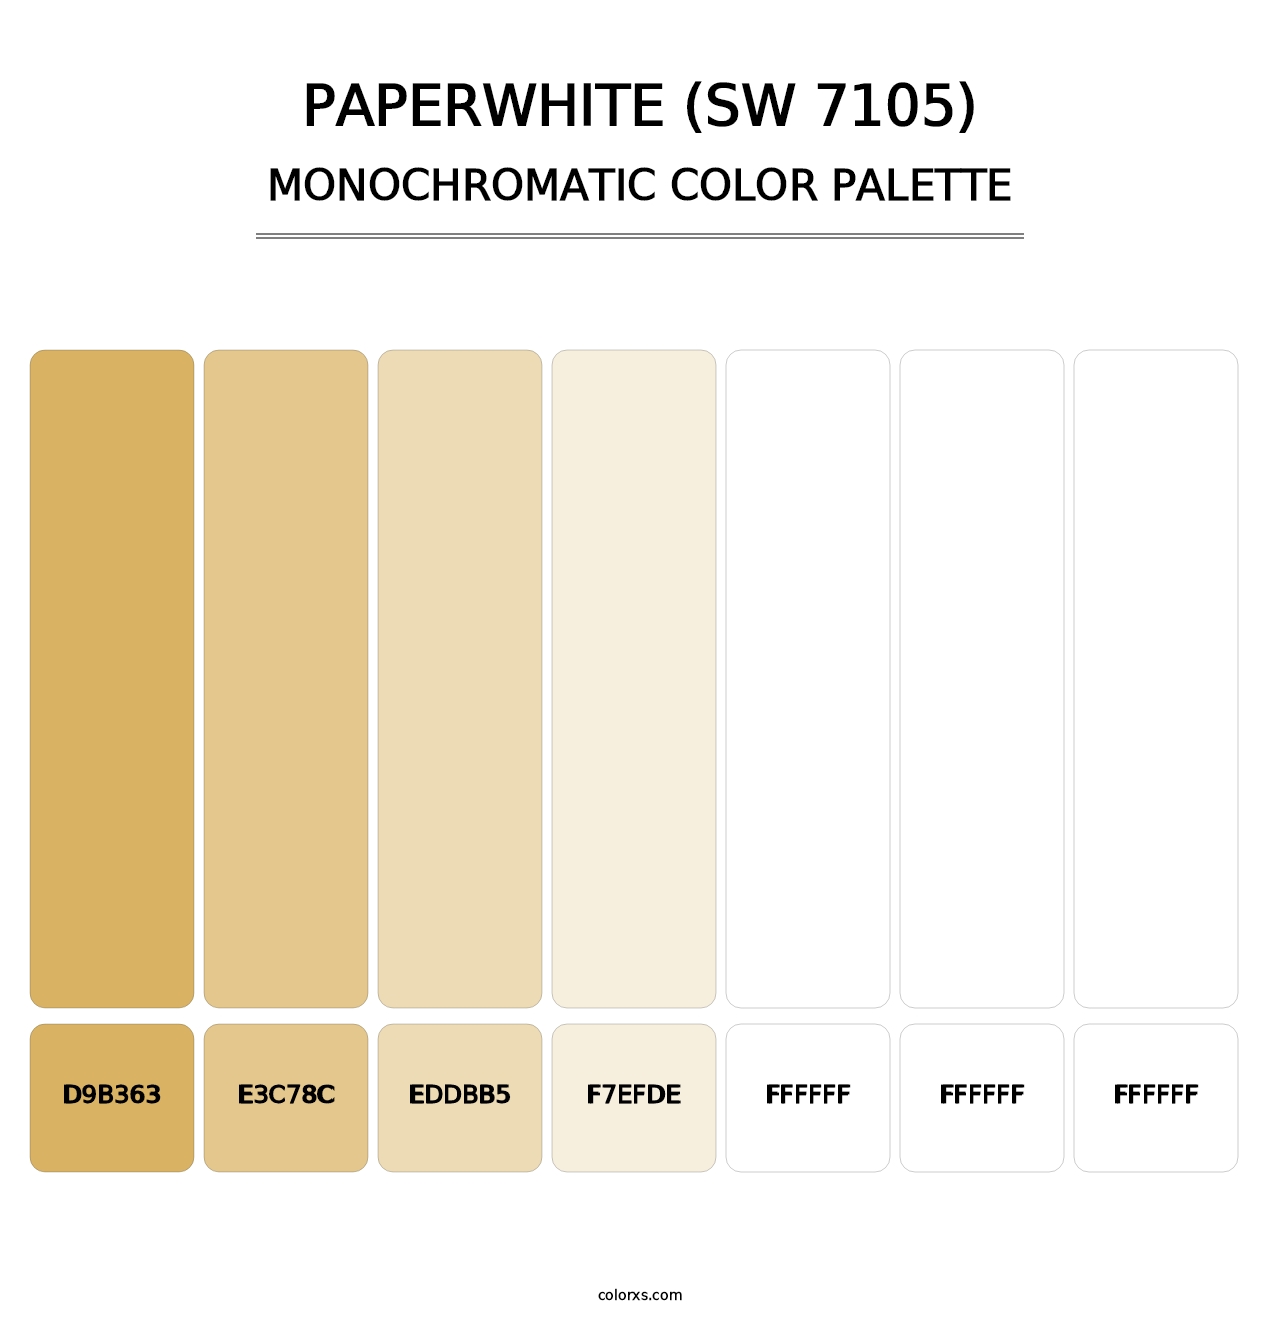 Paperwhite (SW 7105) - Monochromatic Color Palette